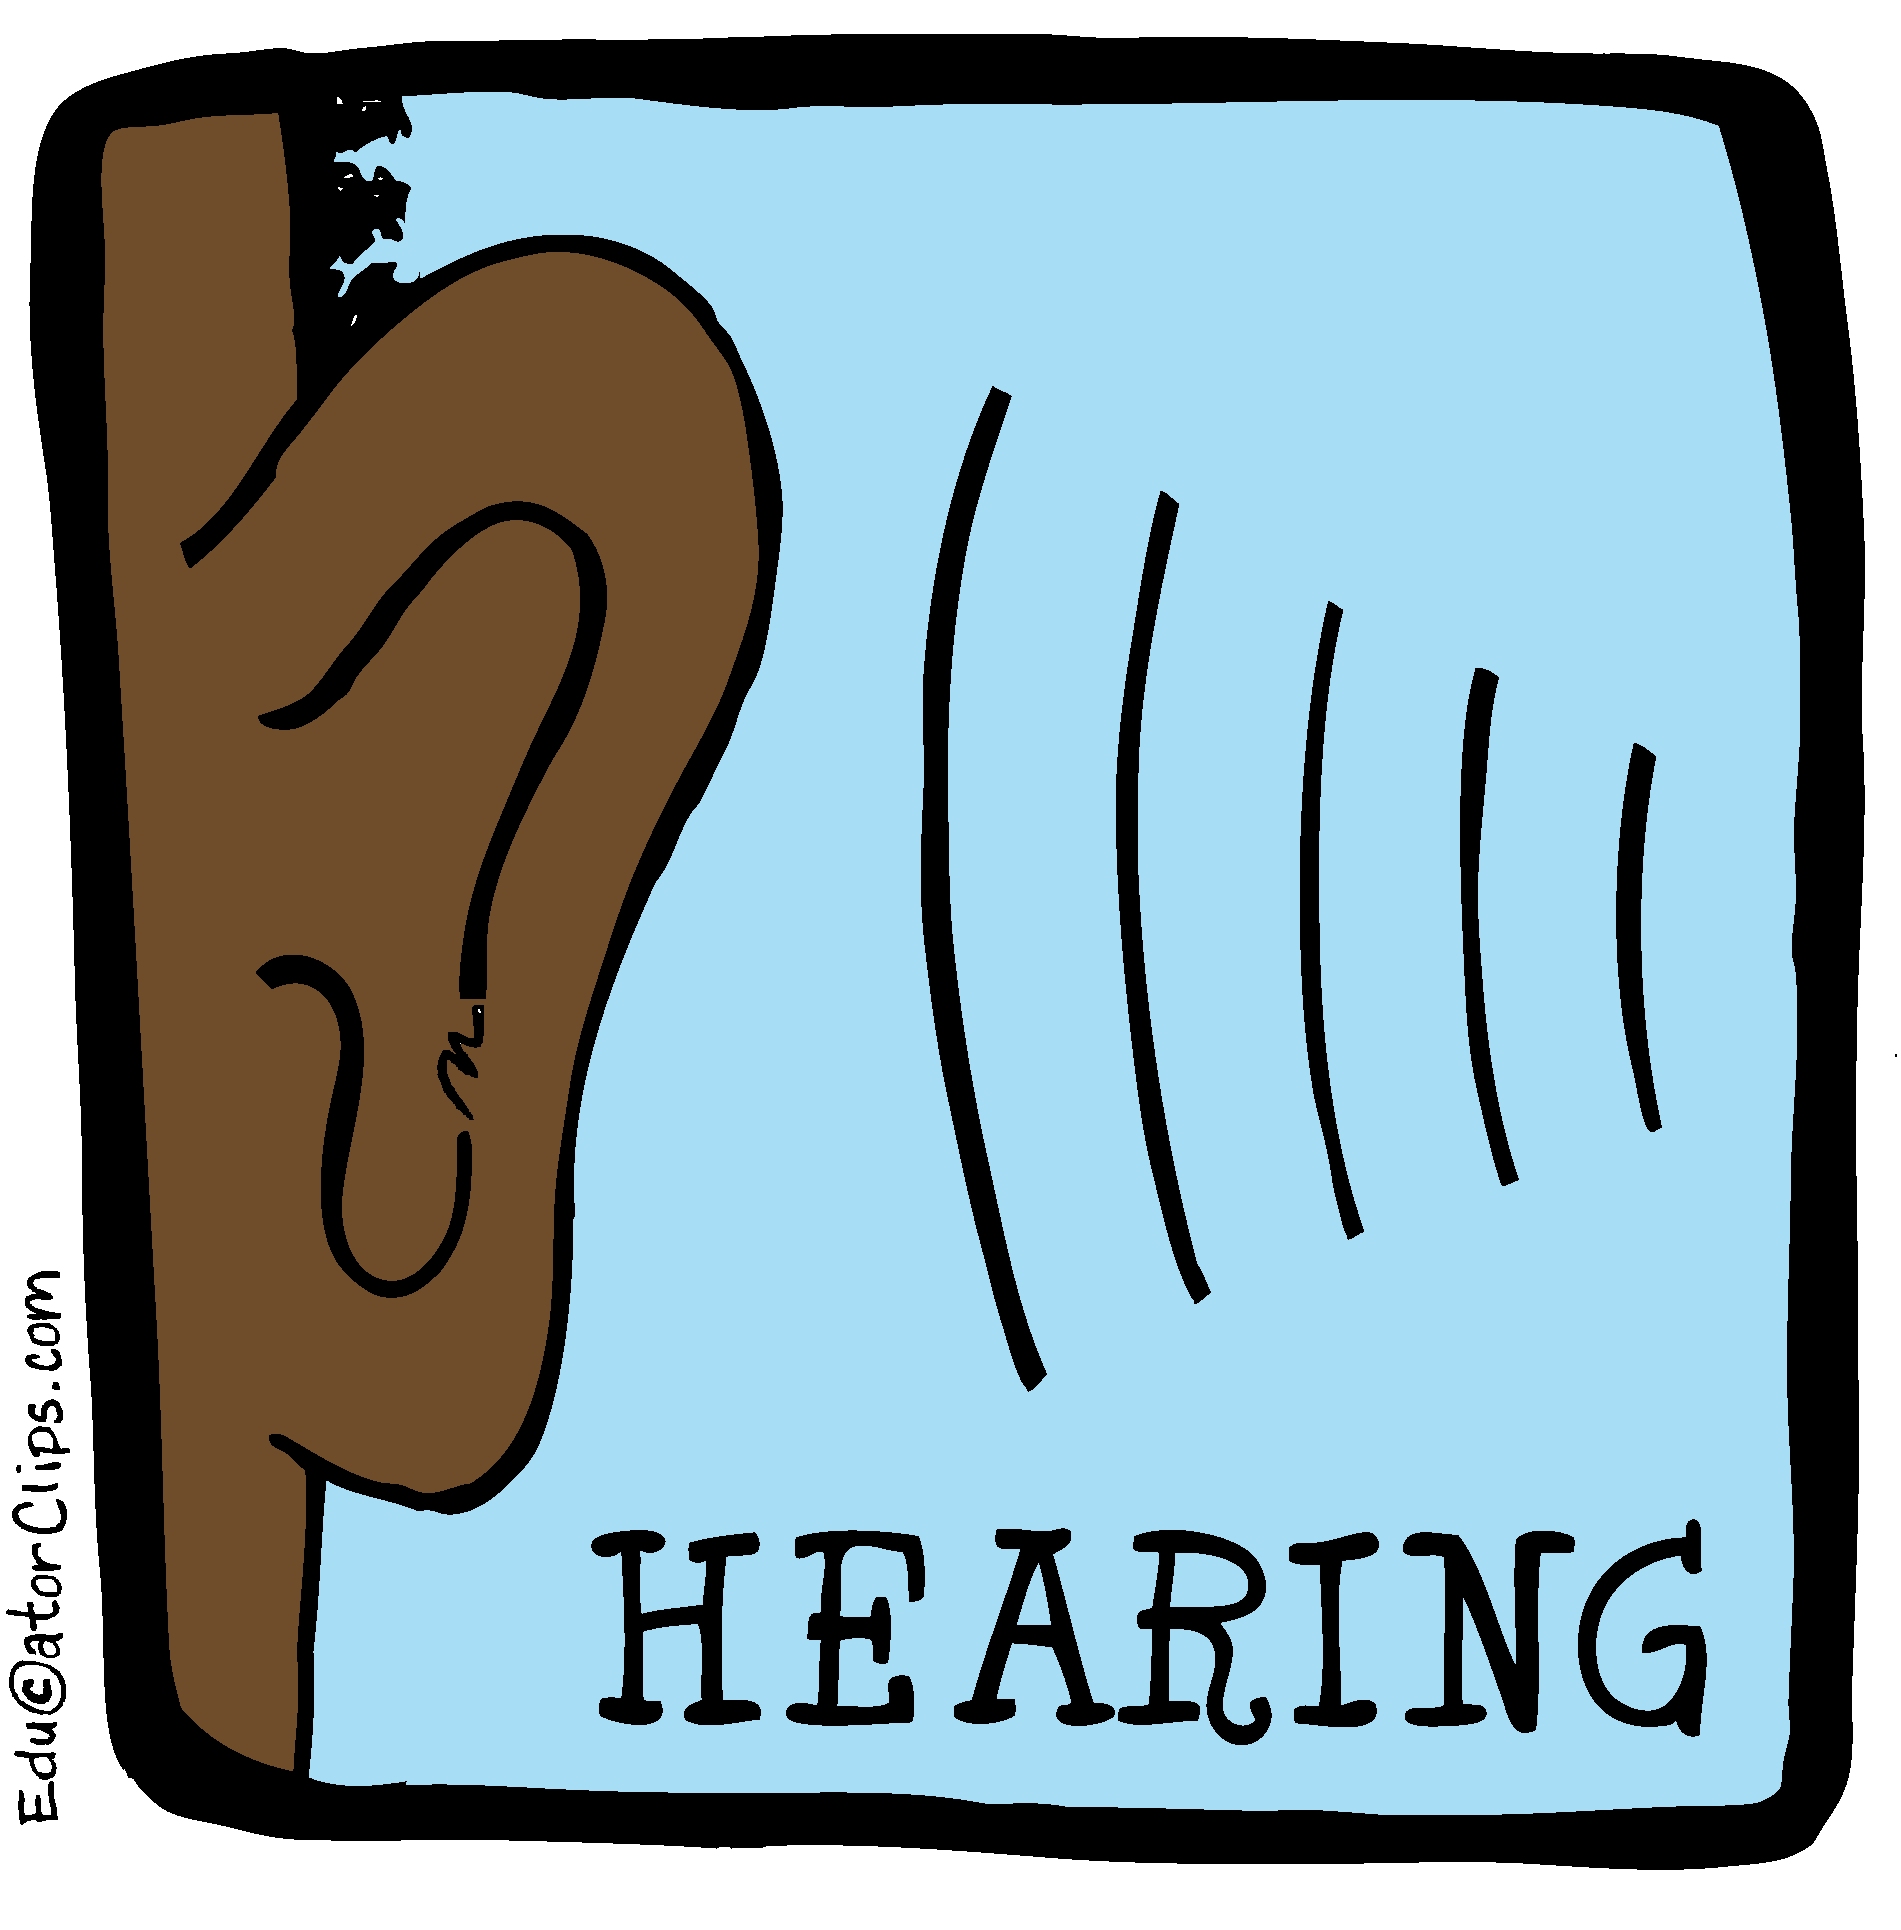 Hearing Clip Art, 5 senses clip art